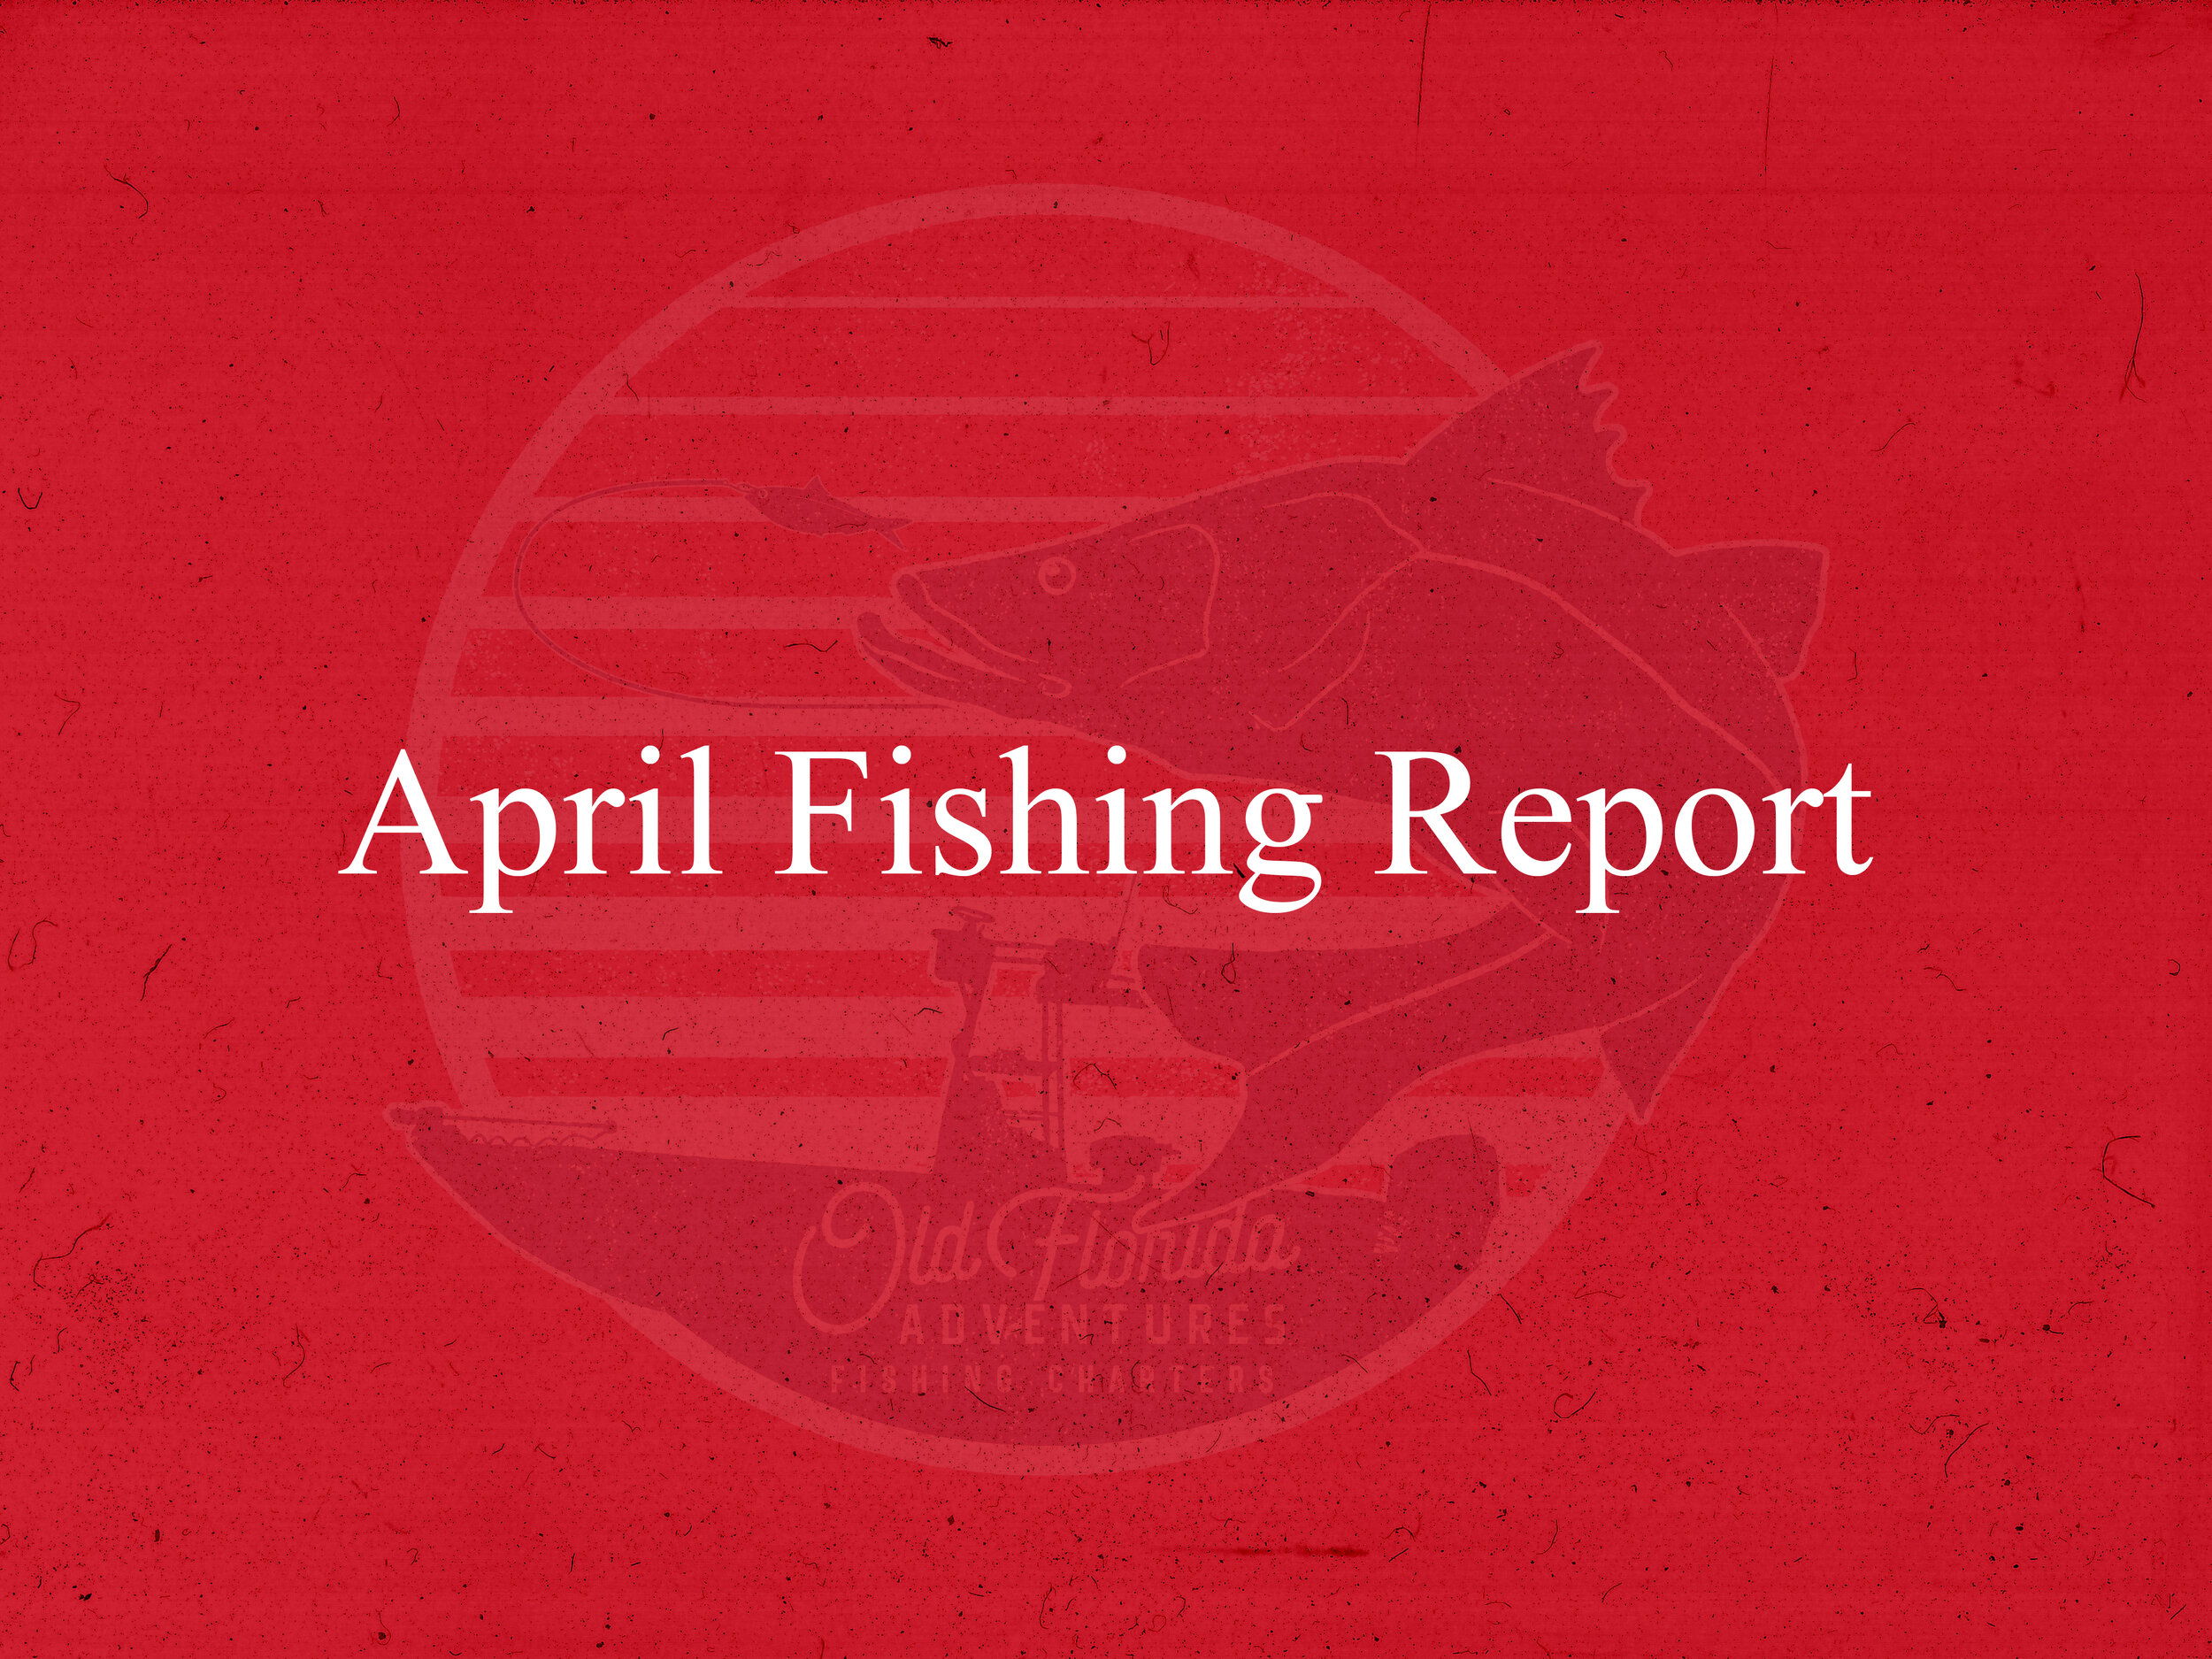 April Fishing Report.jpg